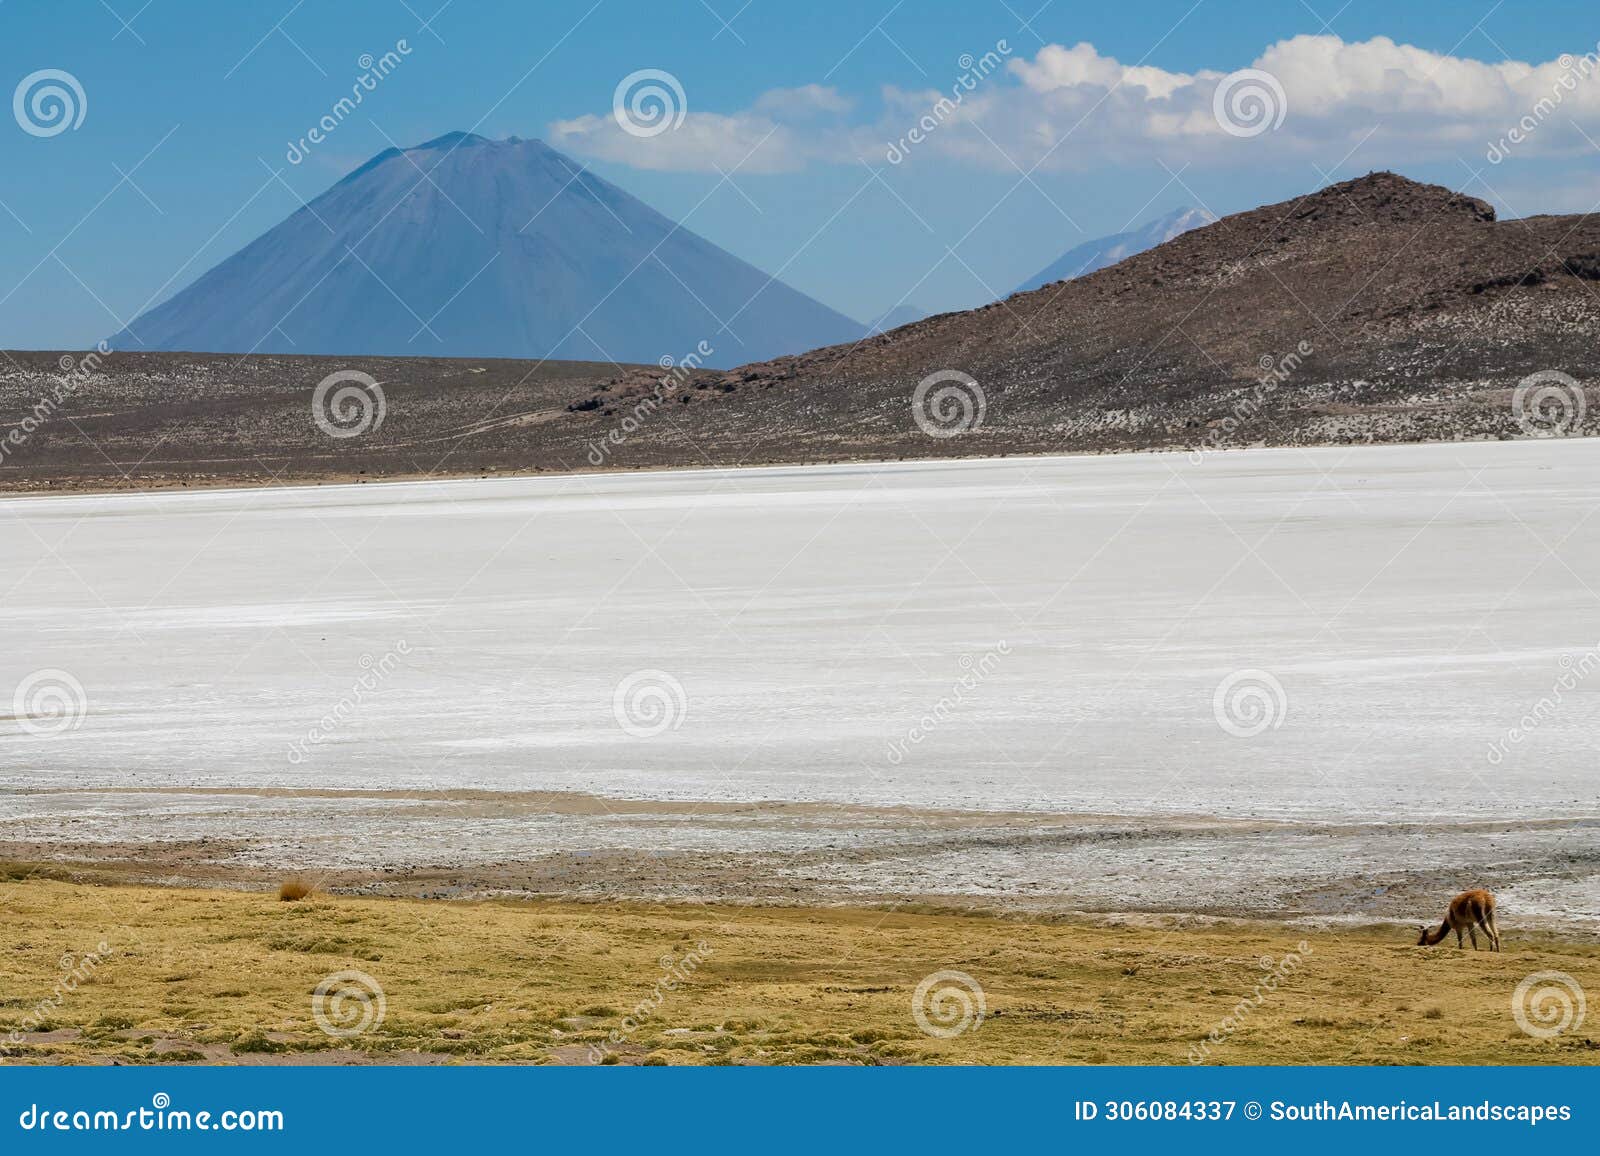 salar on south america altiplano, reserva natural de salinas y aguada blanca